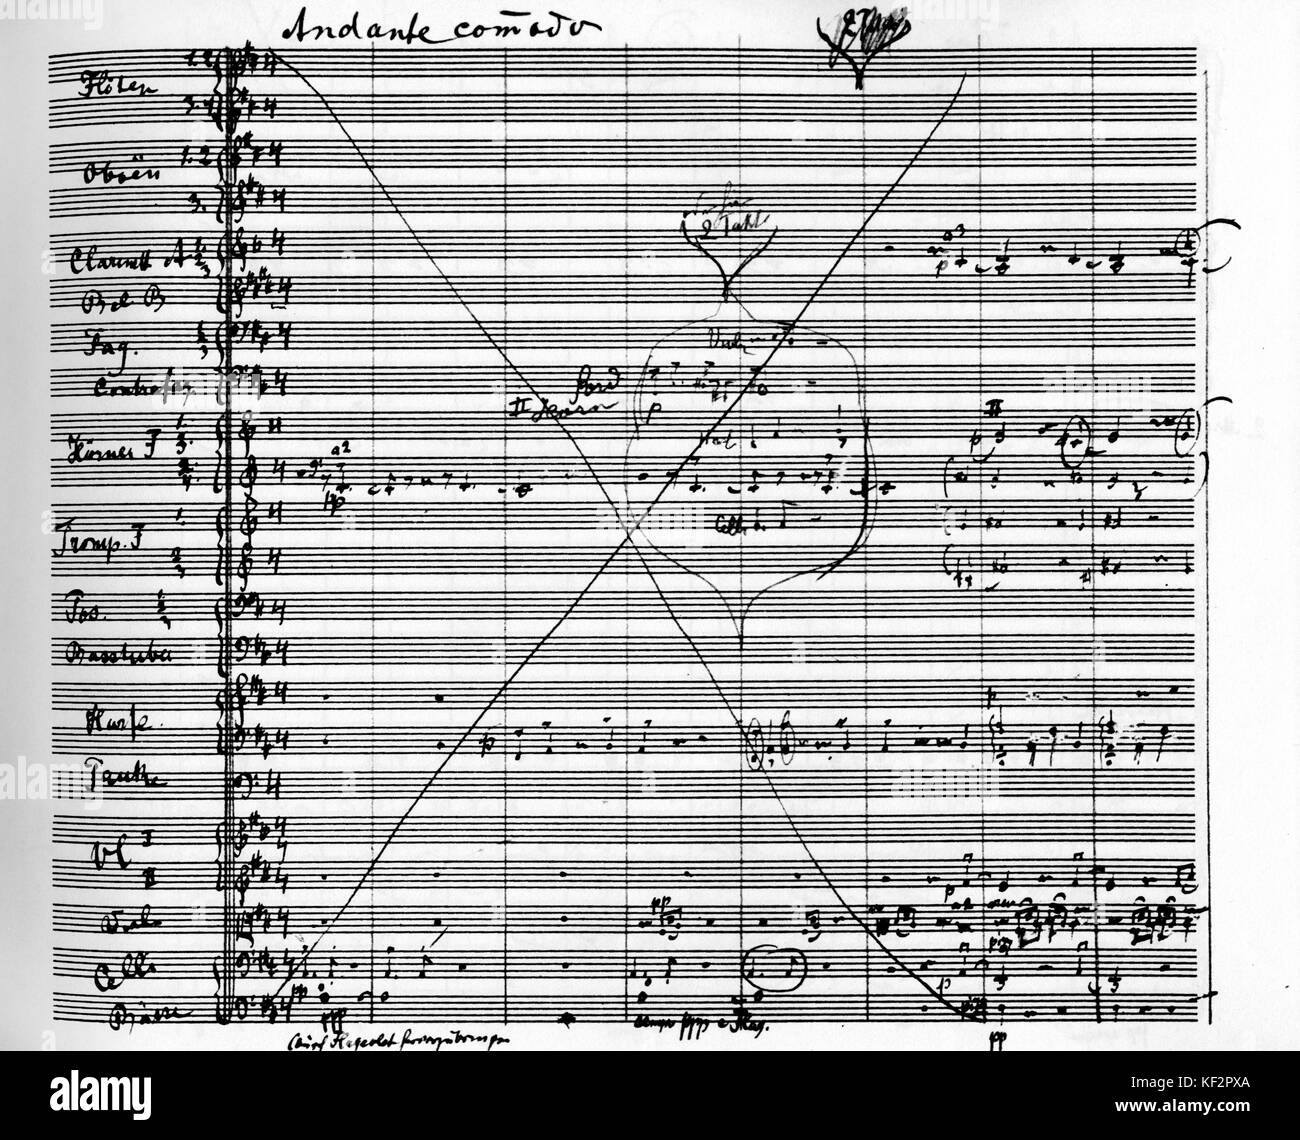 Gustav Mahlers Symphonie Nr. 9 öffnen Seite des ersten Satzes. Durchgestrichen. 'Andante Comodo' oben auf der Seite geschrieben. Handschriftliche Partitur. Nr. 9, 9. Der oesterreichische Komponist, 1860-1911. Stockfoto